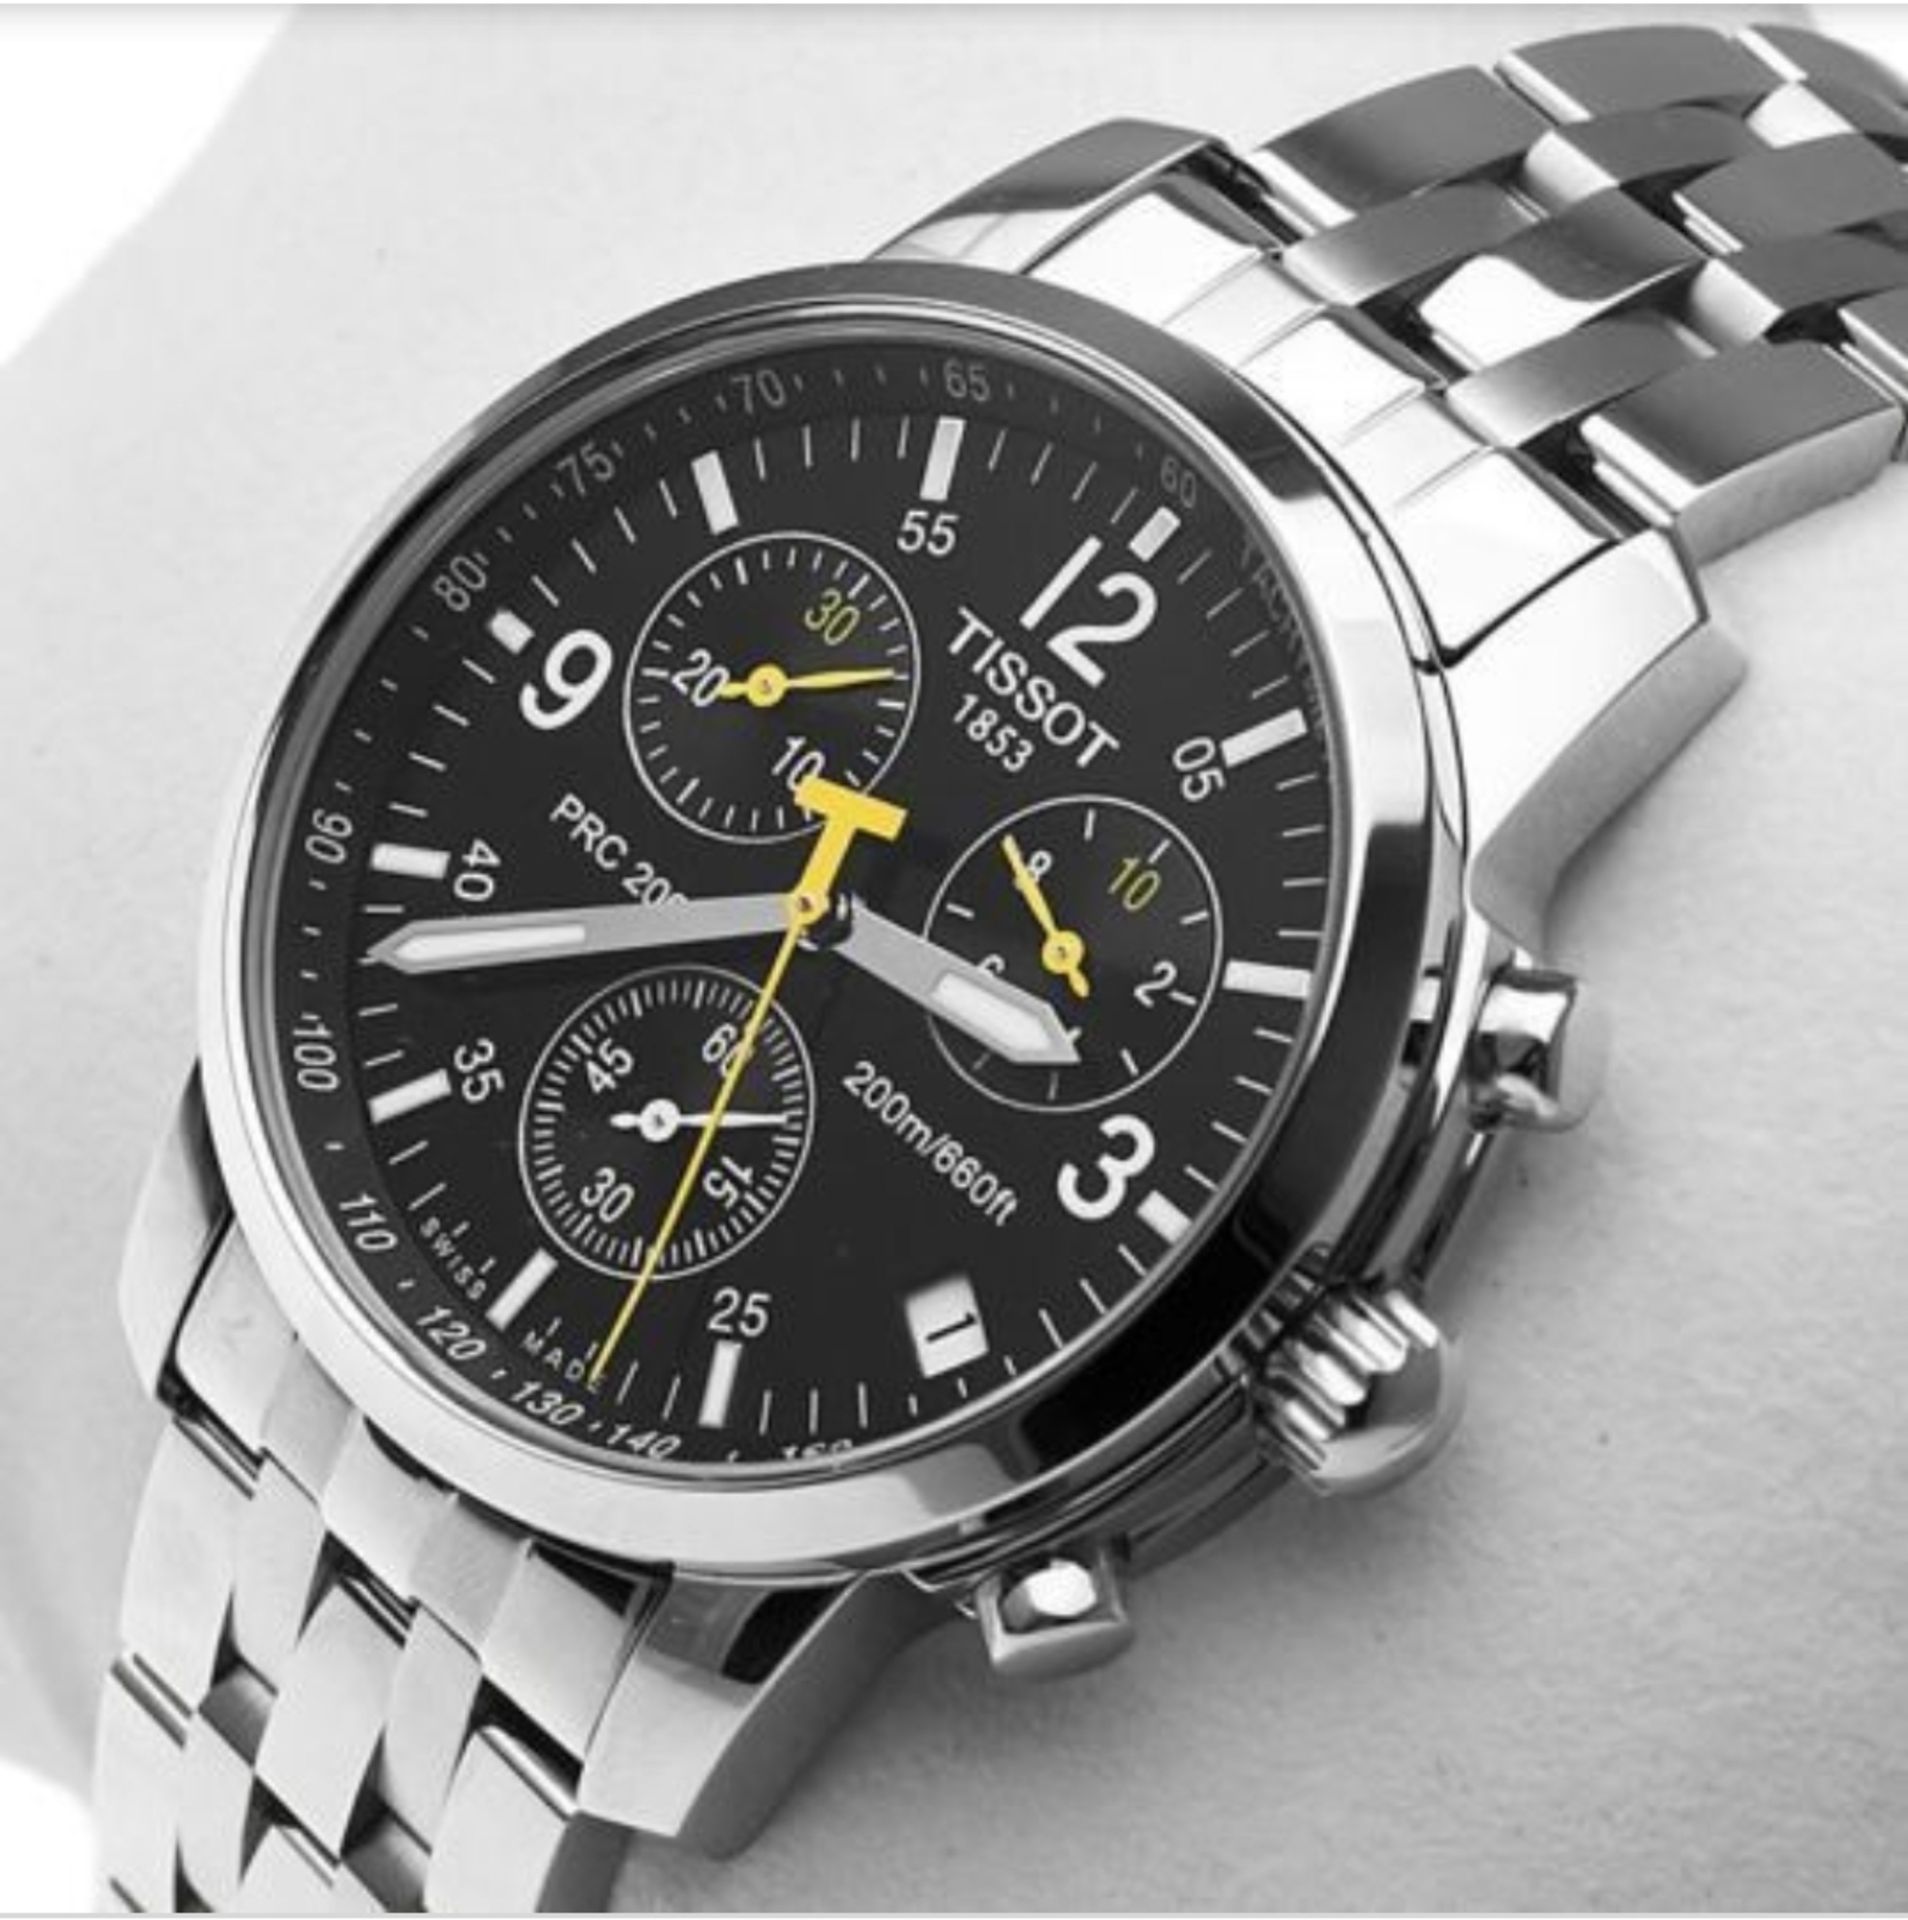 Tissot T17.1.586.52 PRC 200 Men's Chronograph Quartz Watch - Image 5 of 11